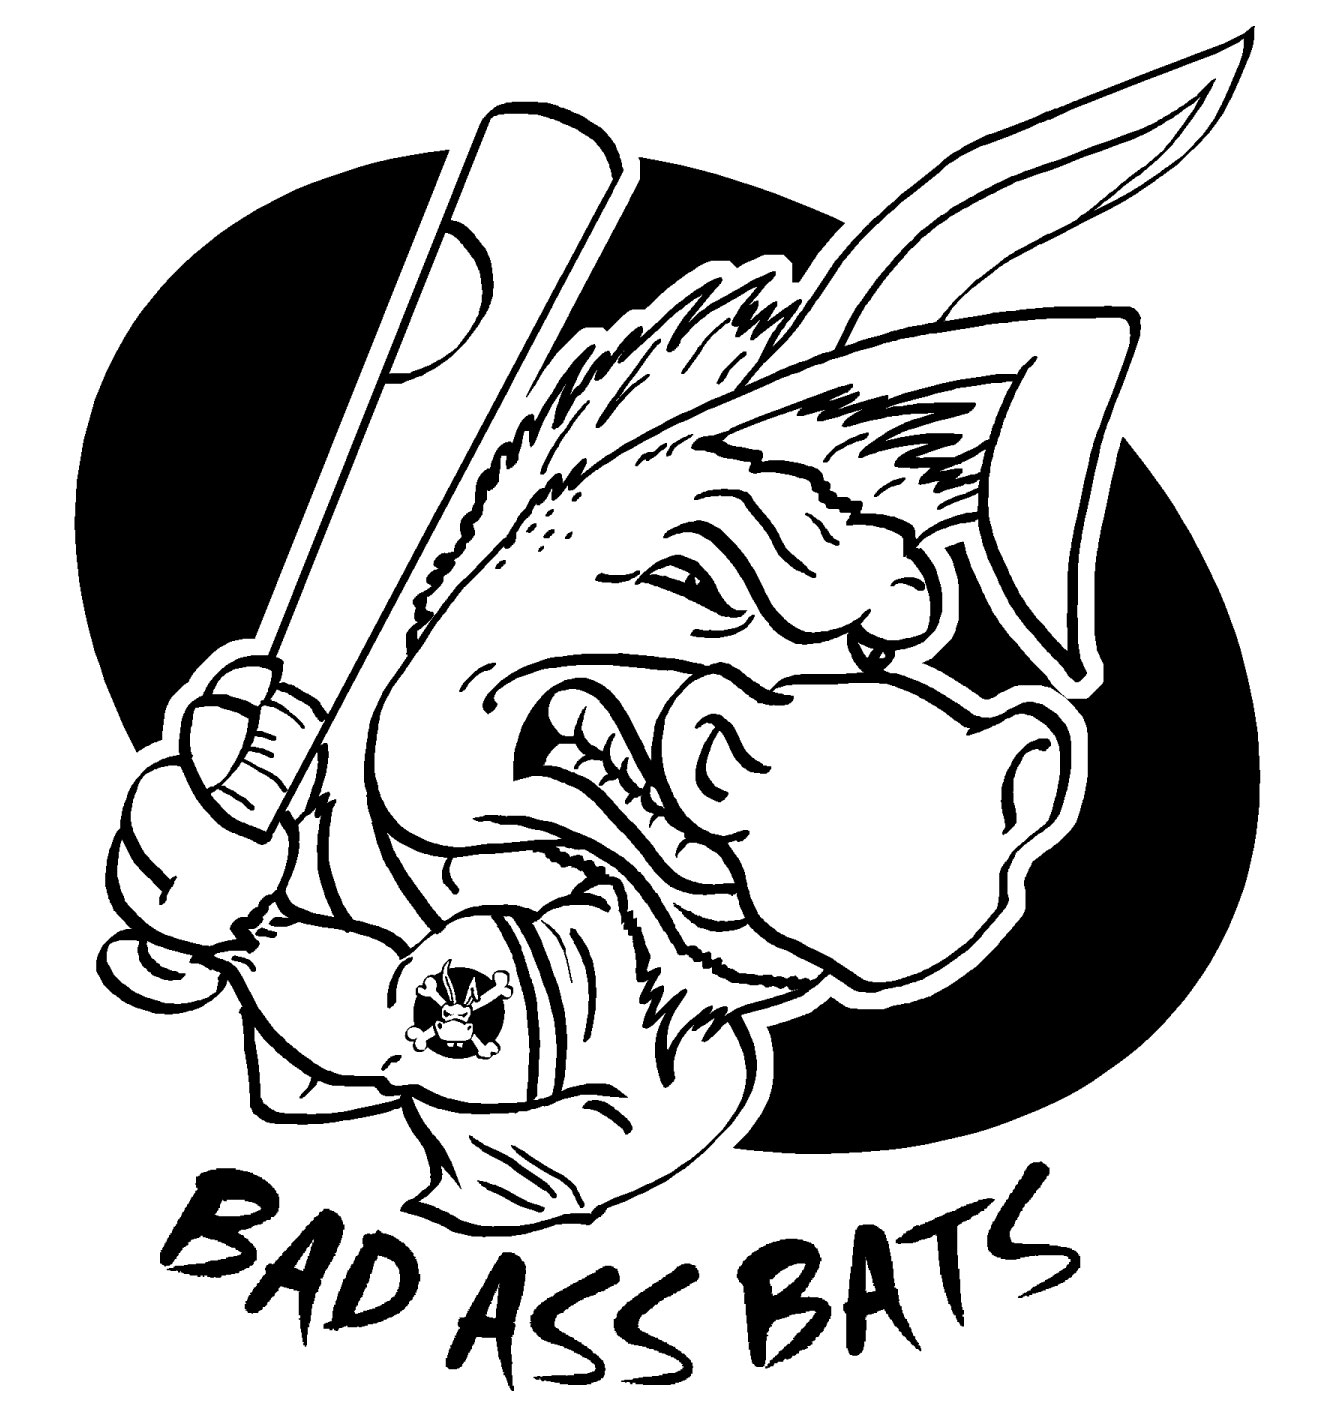 Bad Ass Bats Logo